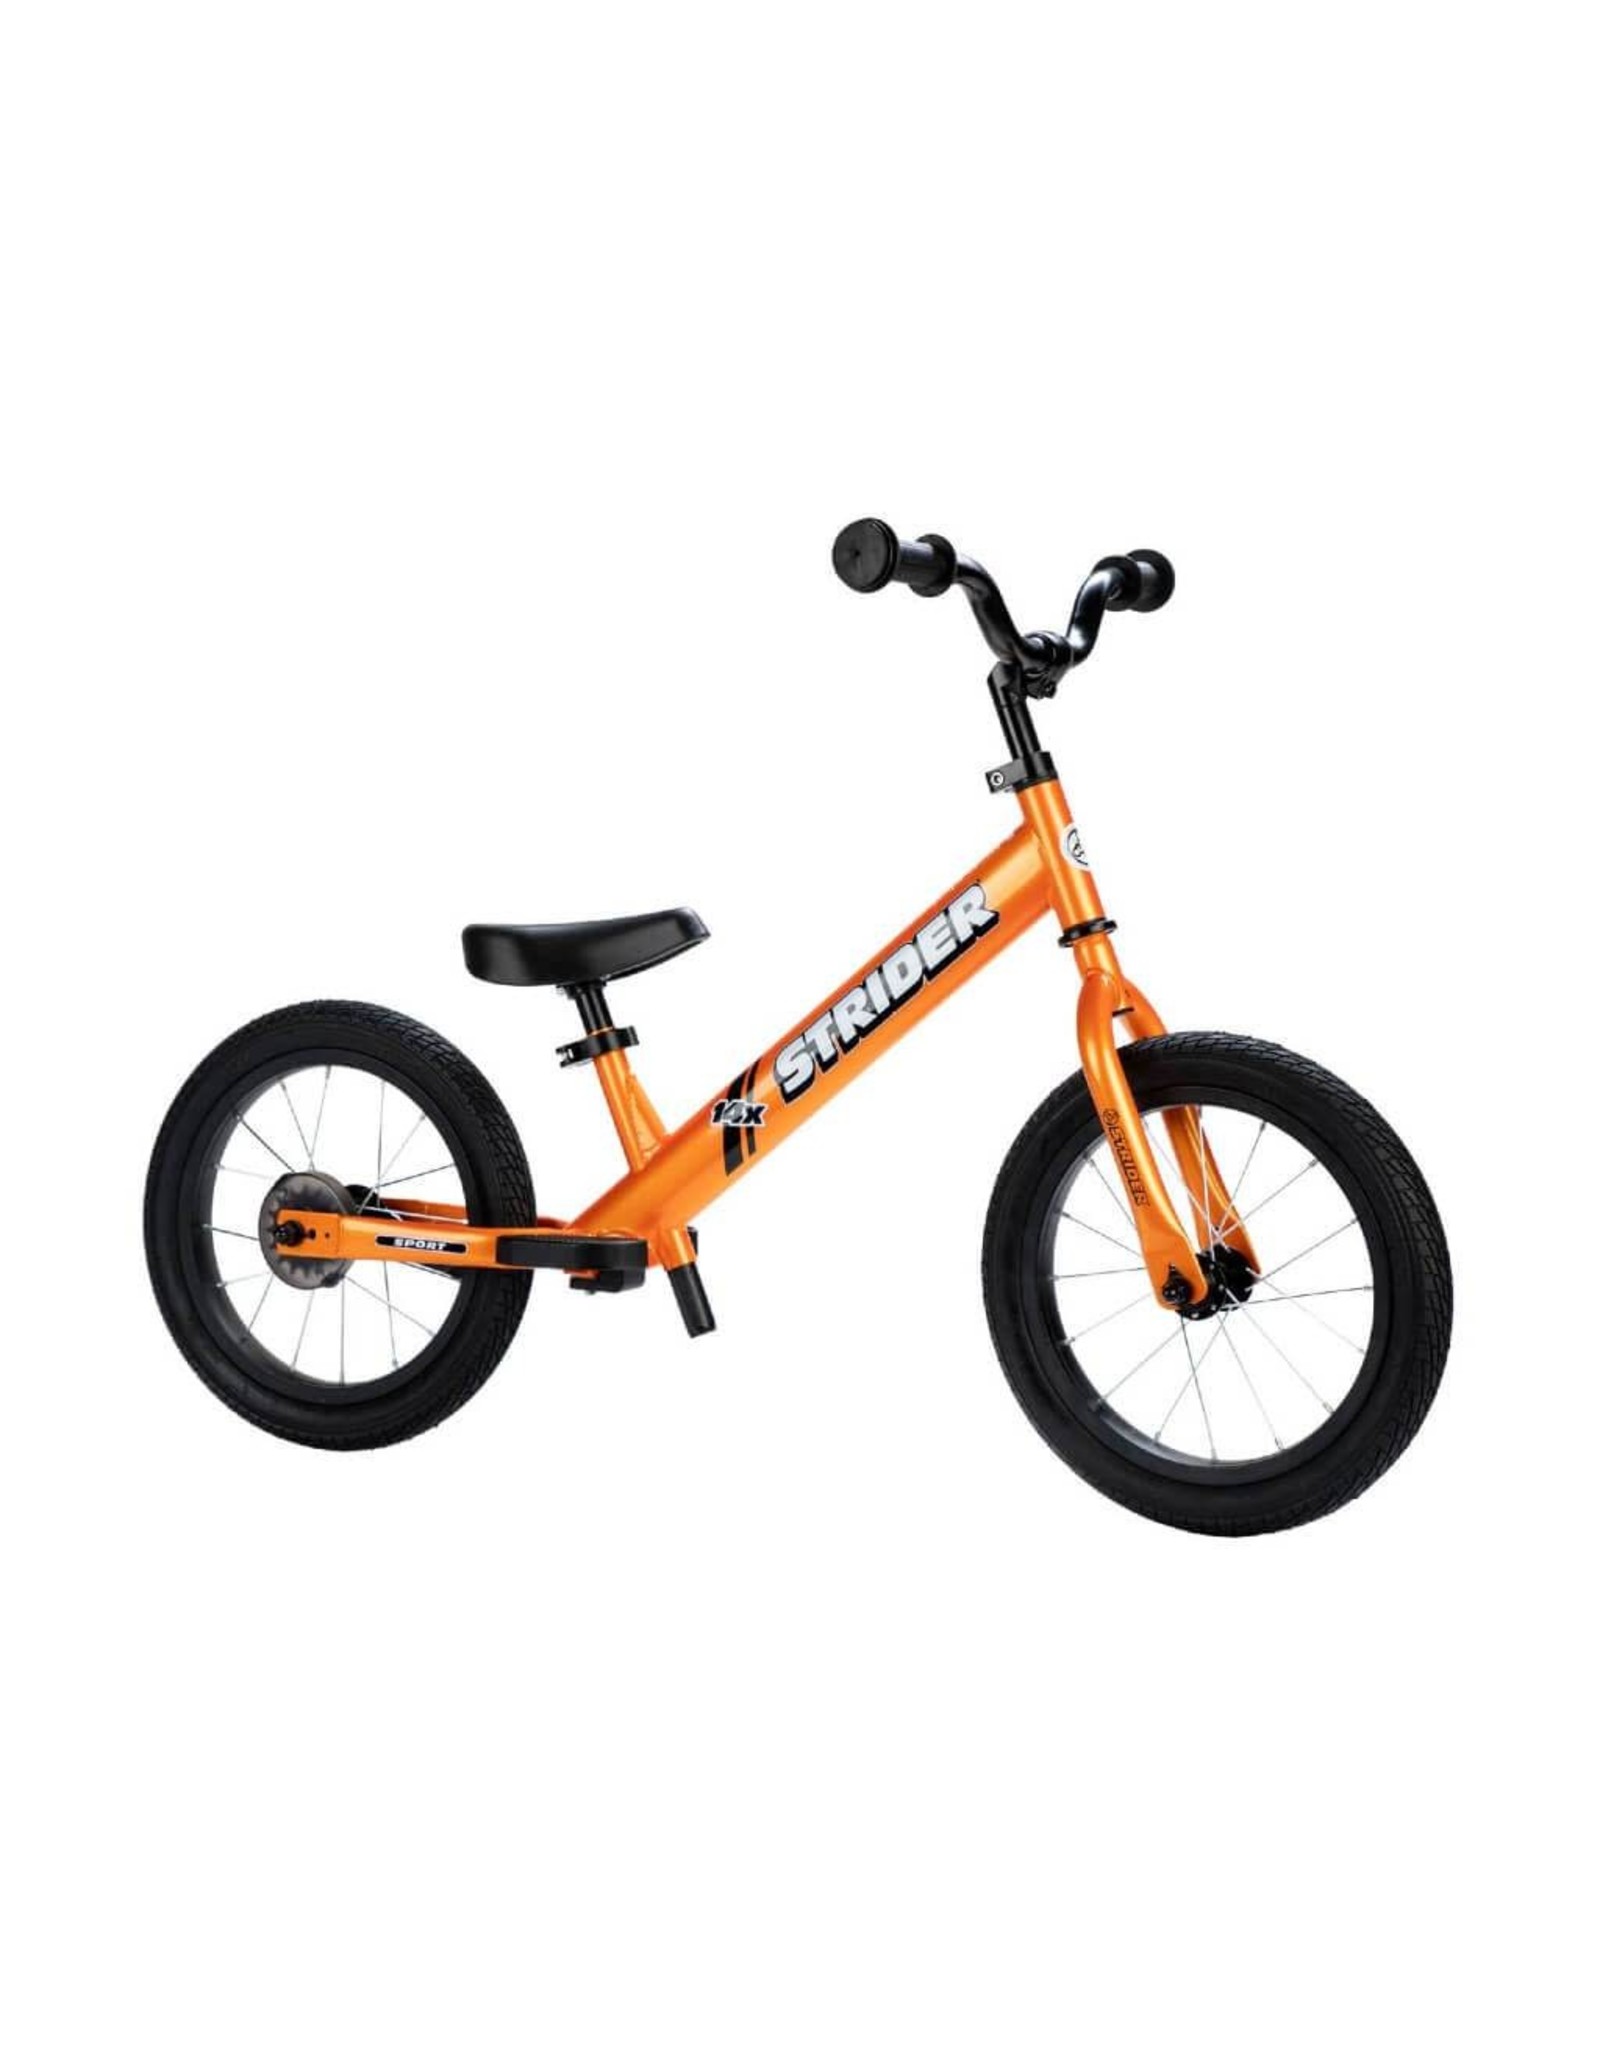 Strider Sports Strider 14x Sport Balance Bike - Tangerine